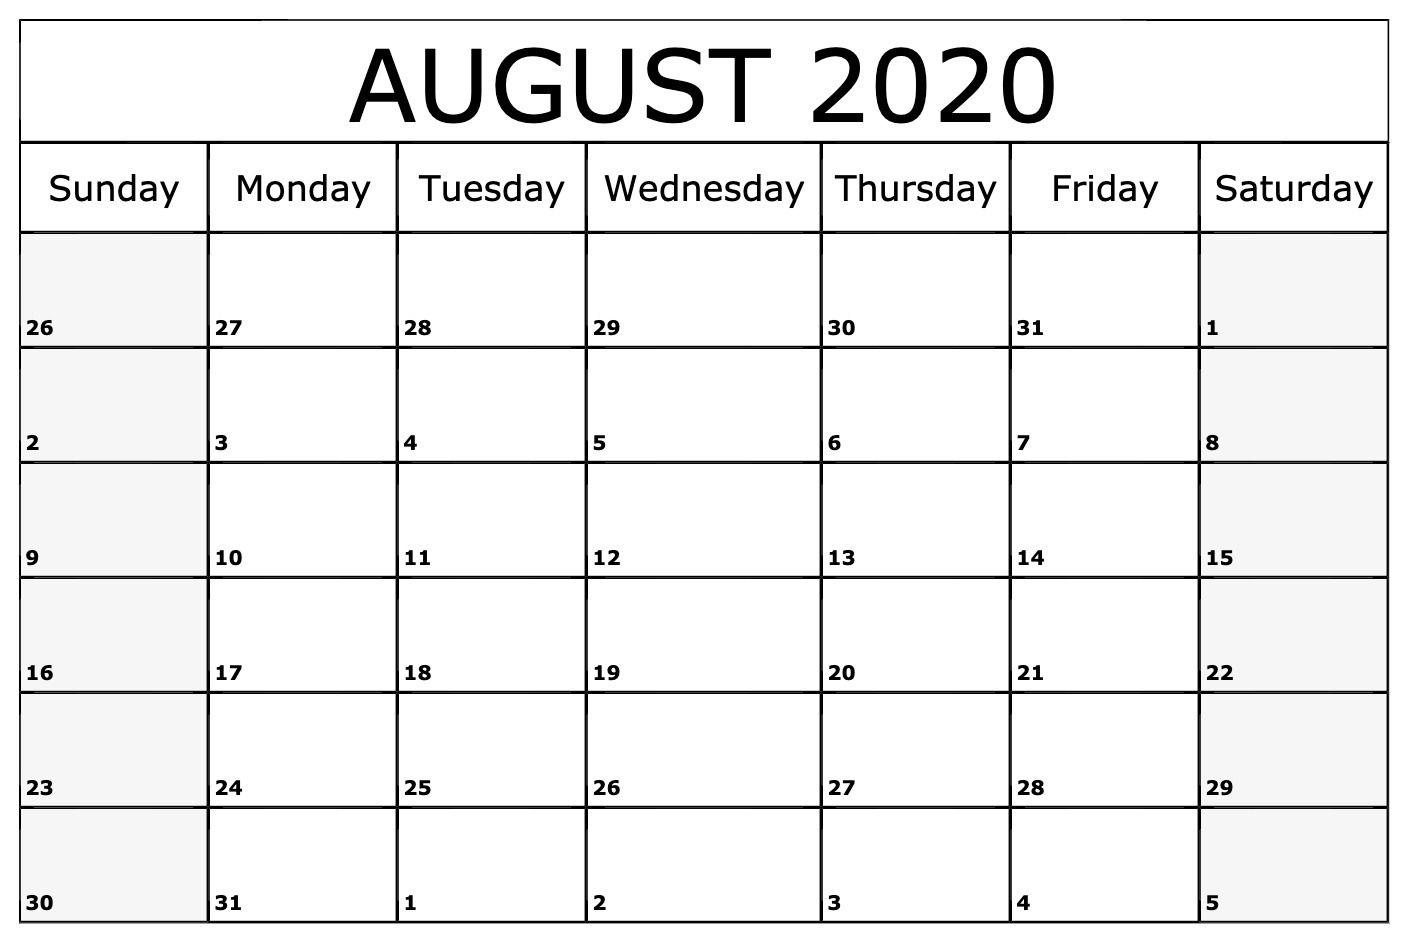 August 2020 Calendar Template | August Calendar, Blank